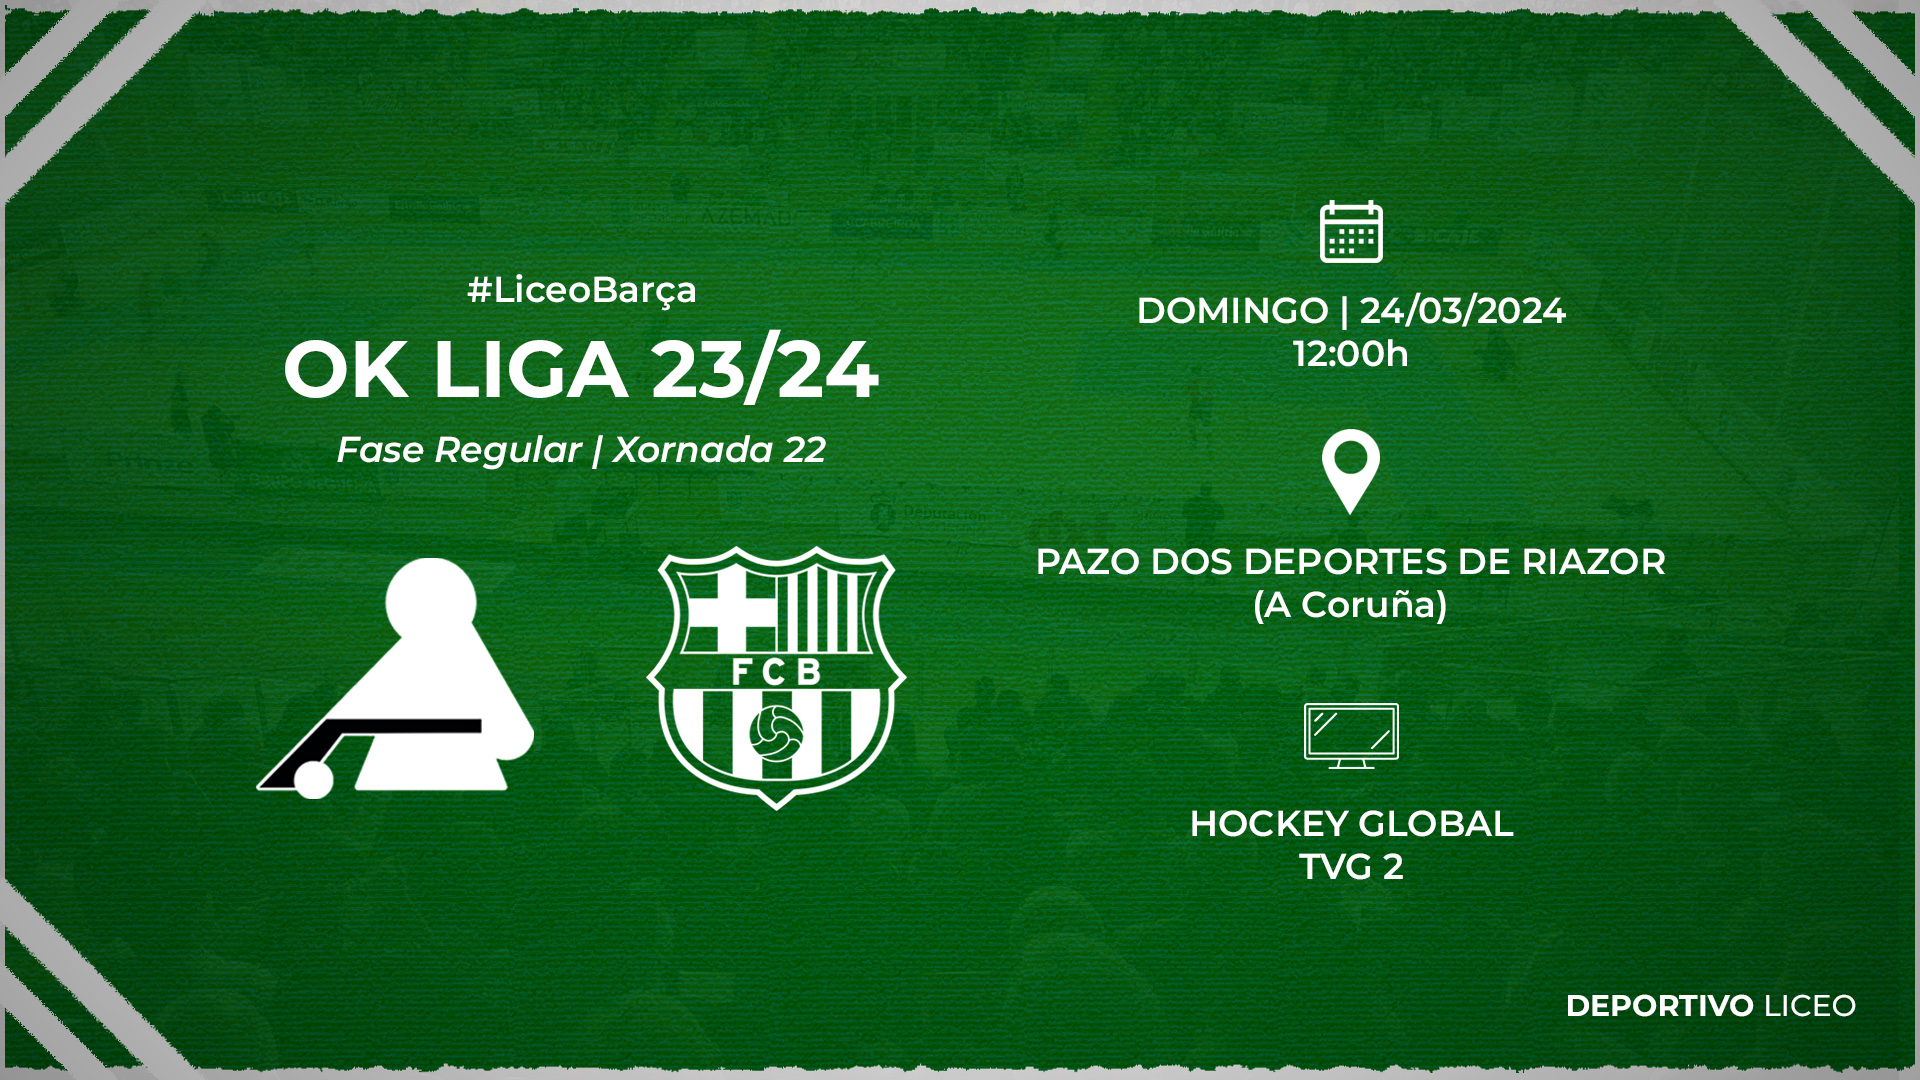 #LiceoBarça | ENTRADAS para a xornada 22 da OK Liga 23/24